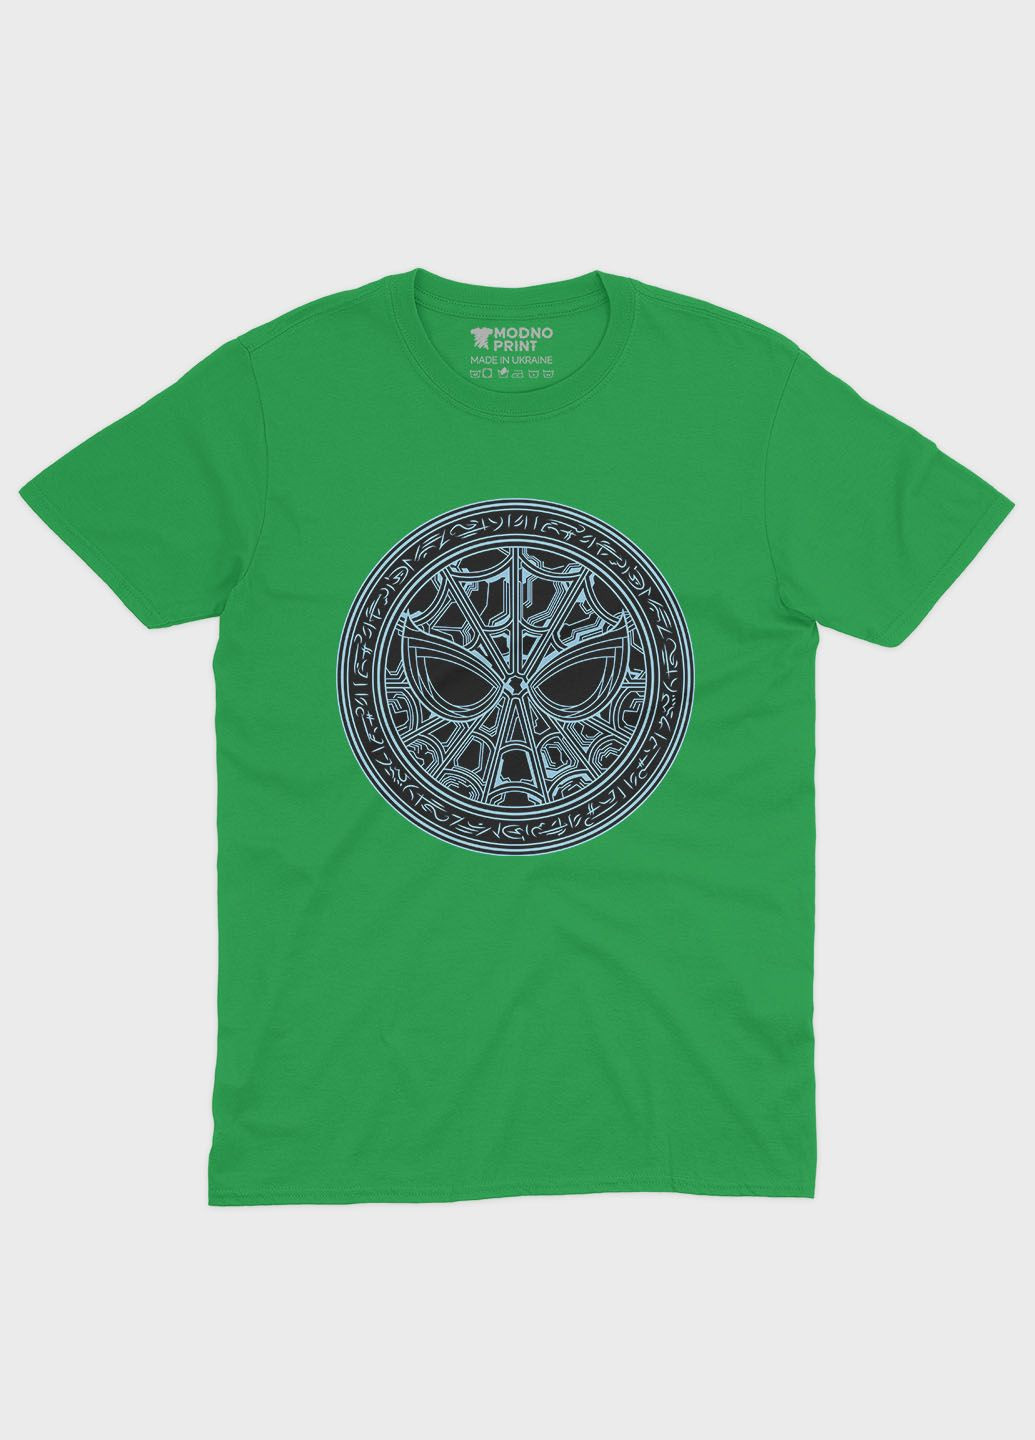 Зелена демісезонна футболка для хлопчика з принтом супергероя - людина-павук (ts001-1-keg-006-014-088-b) Modno